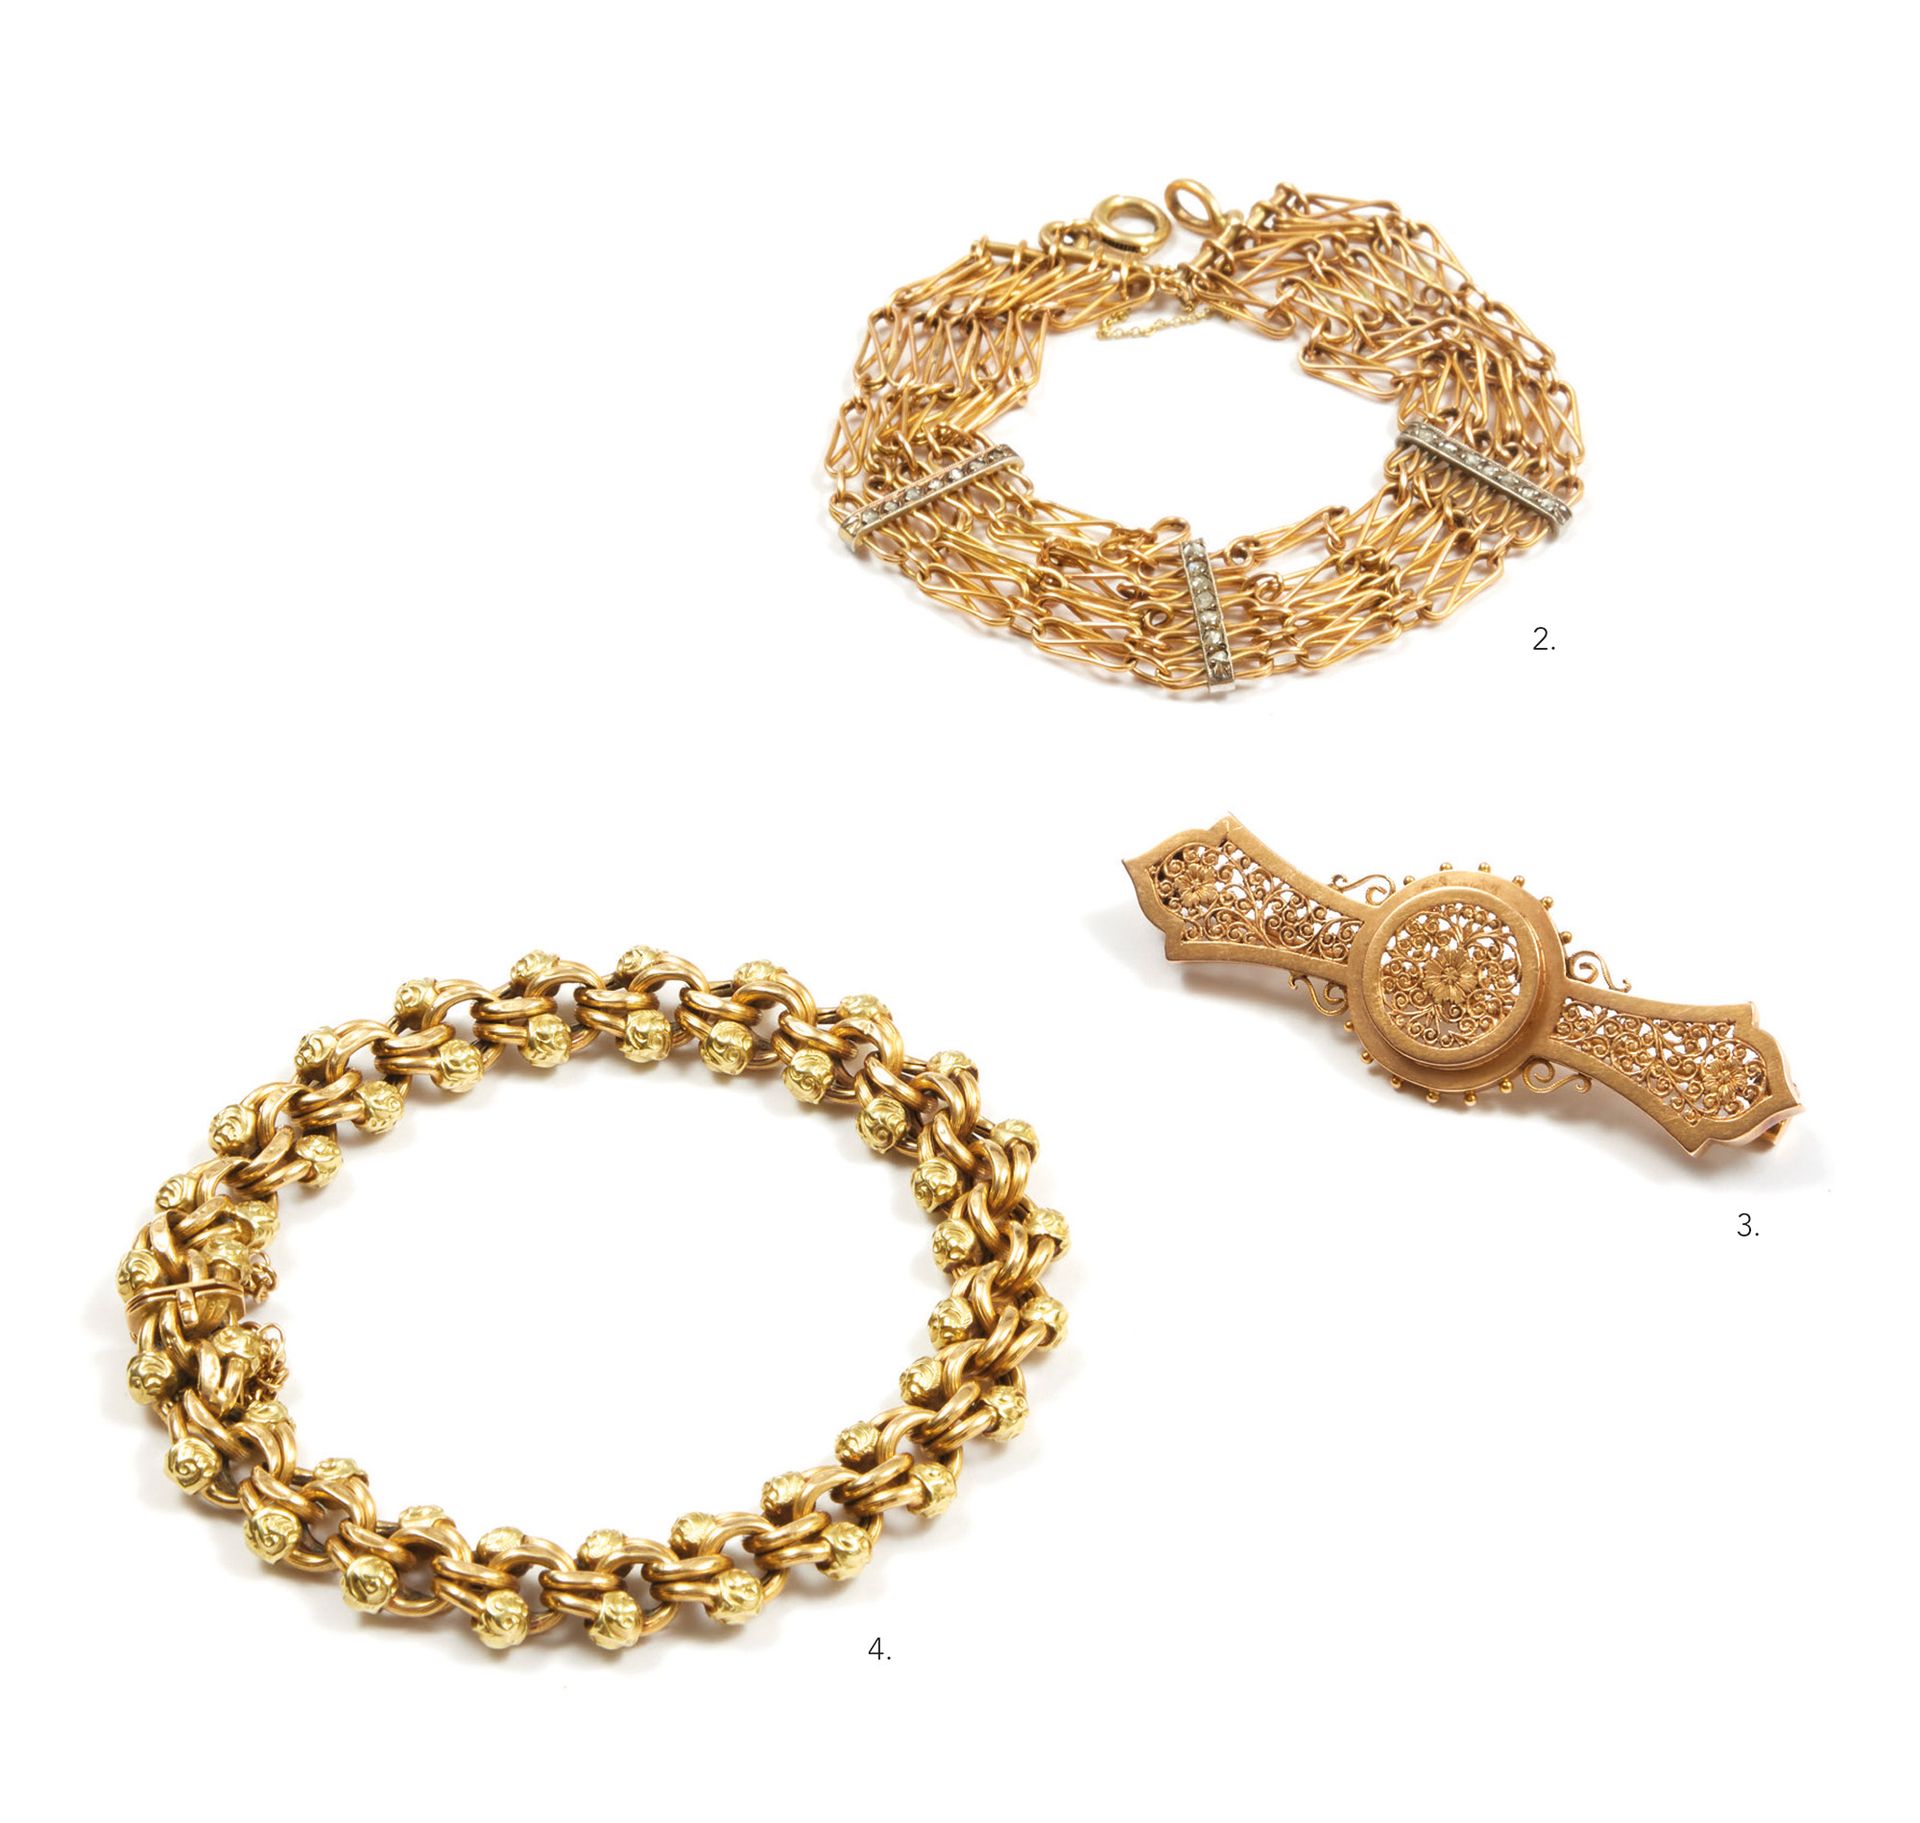 Bracelet 手镯 
18K(750)金手镯，有5条交错的链节和3条镶有玫瑰式切割钻石的条状物。 
长度：约17厘米。 
总重量 : 21,1 克